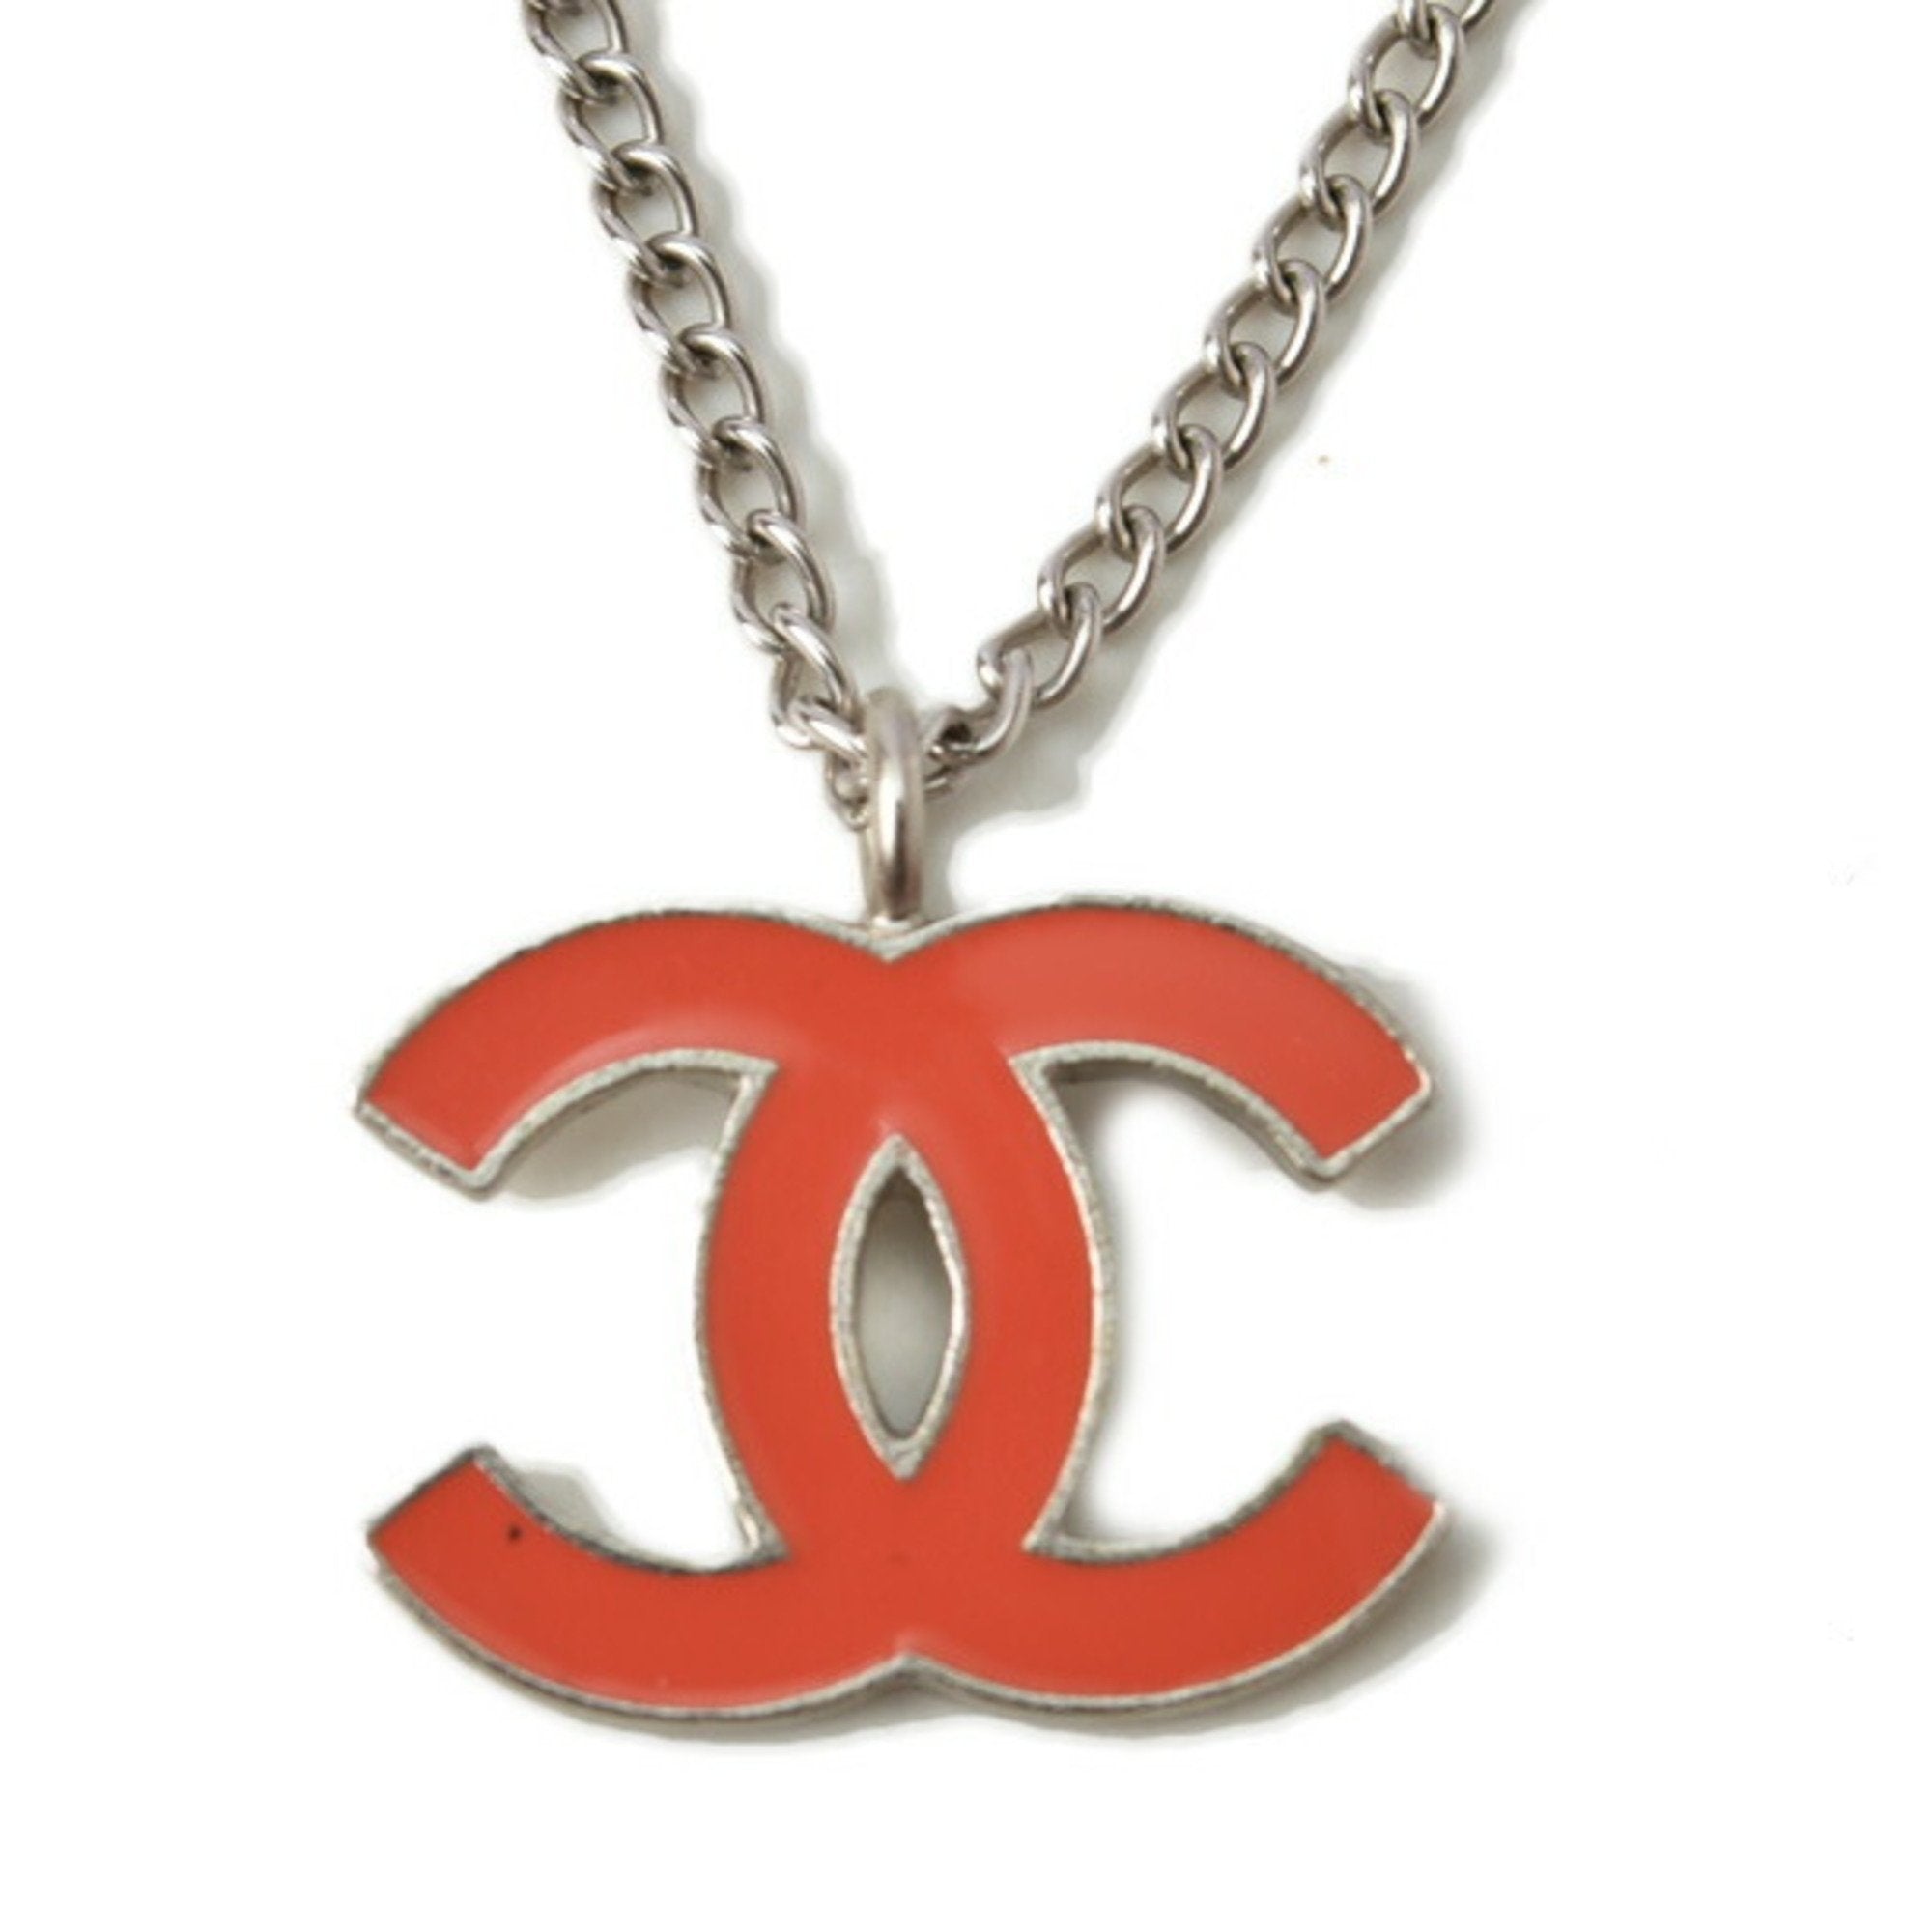 Chanel necklace/pendant CHANEL coco mark/CC coral orange/silver